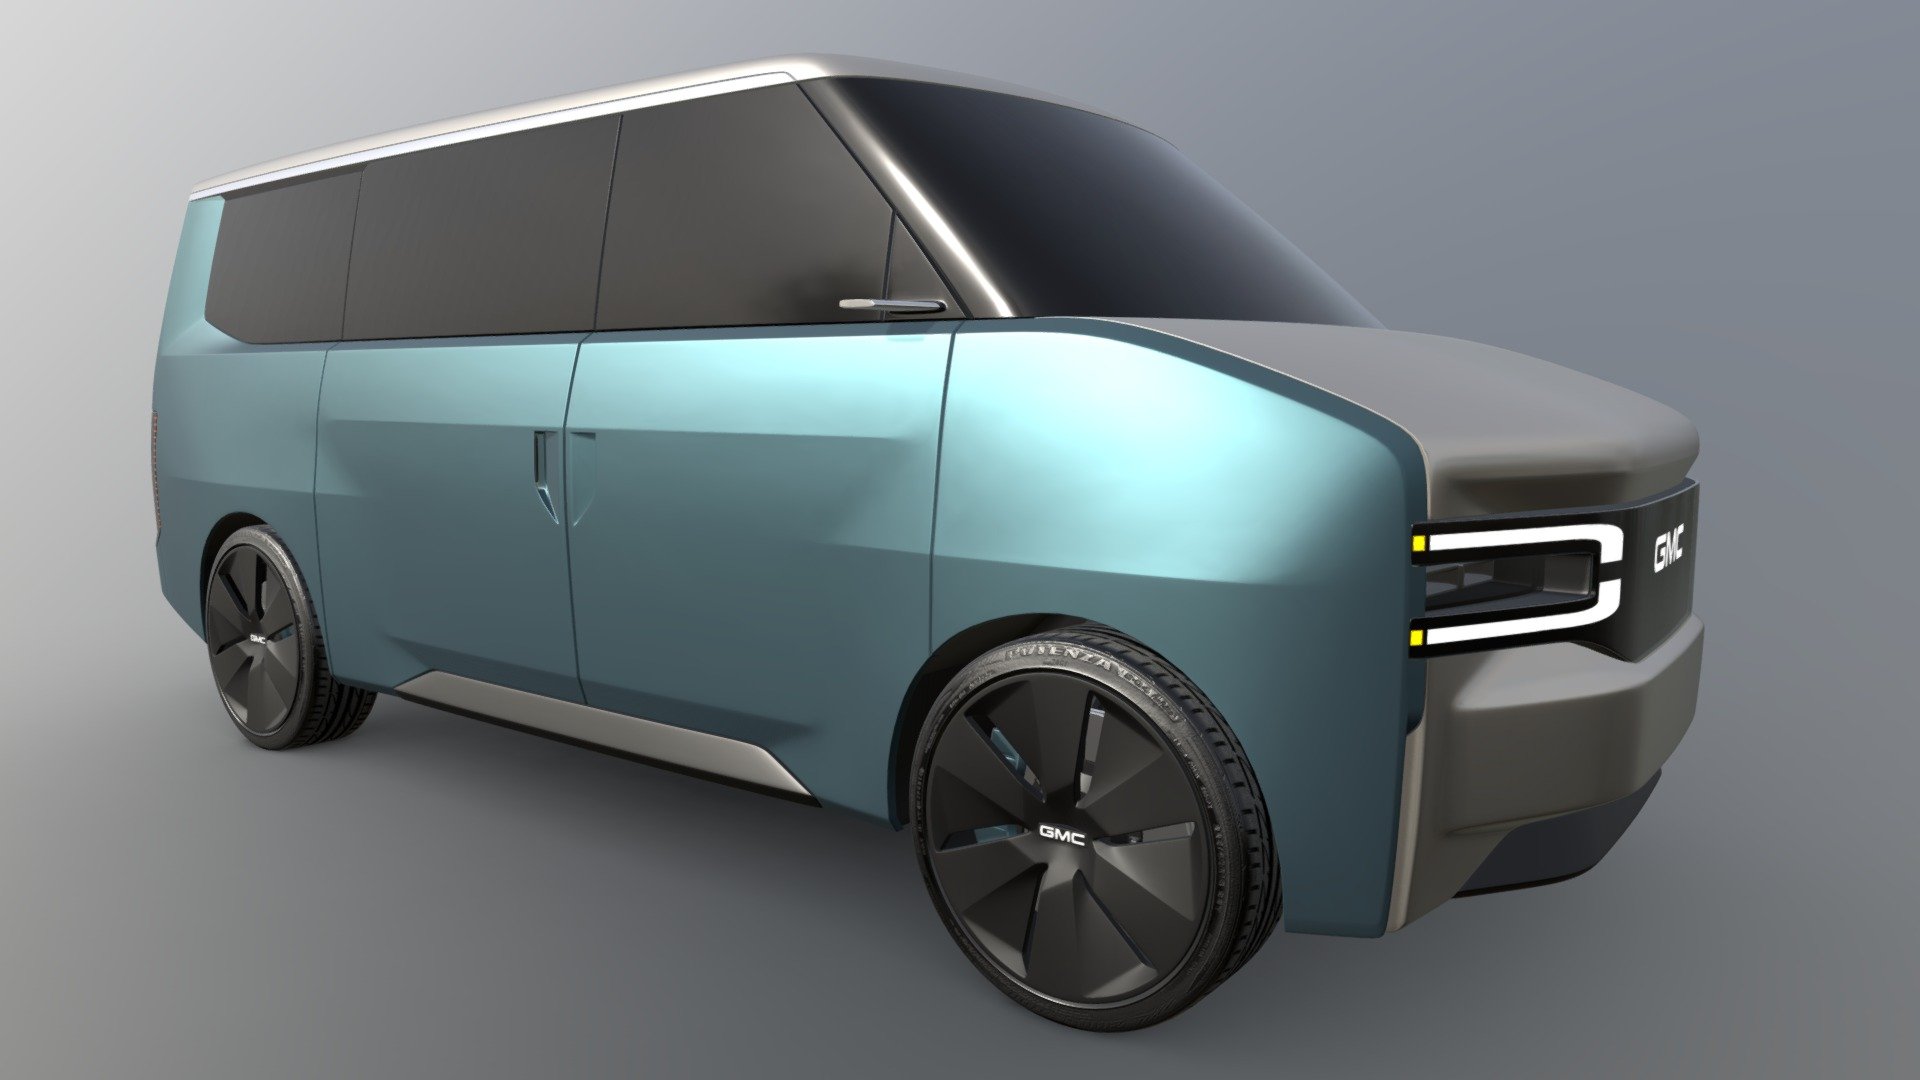 Exterior design concept for an electrified revival of the GMC Safari / Chevrolet Astro vans - GMC Safari EV Concept - 3D model by Jrubinsteintowler 3d model